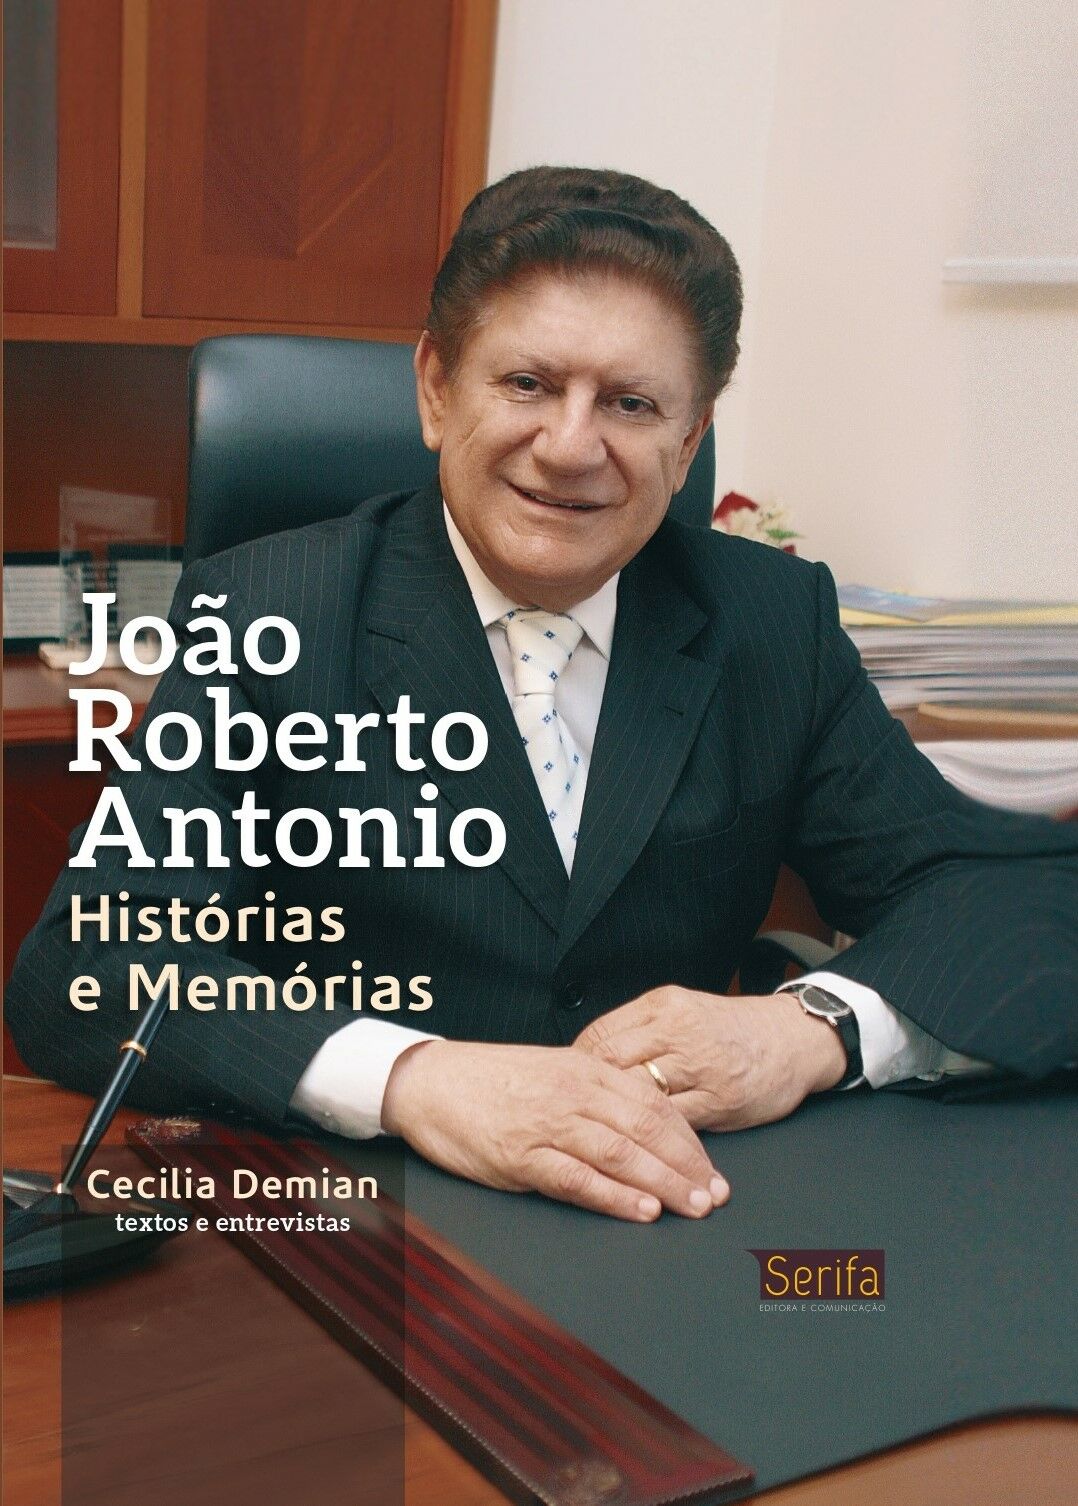 Imagem de https://cdn.interago.com.br/img/jpg/w_0_q_8/129/mc/Páginas/02. Vitrine de Livros/Não Ficção/João Roberto Antonio - Histórias e Memorias/João-Roberto-Antonio-histórias-e-memórias